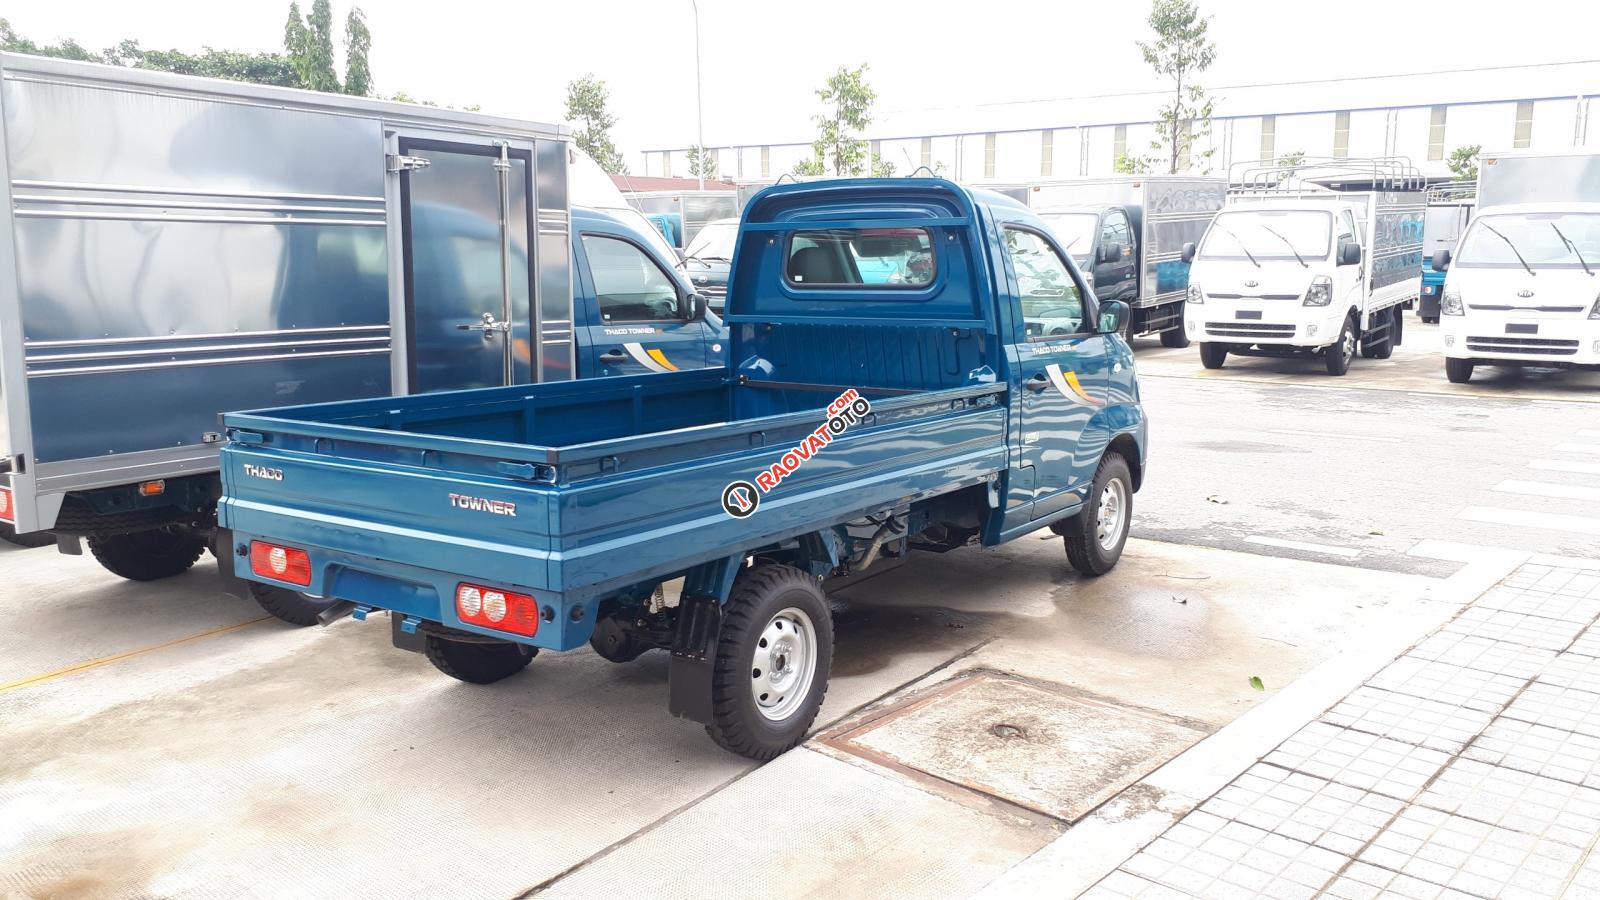 Giá xe tải 990kg, Thaco Towner, hỗ trợ trả góp 80%_LH Em: 0938380032-2